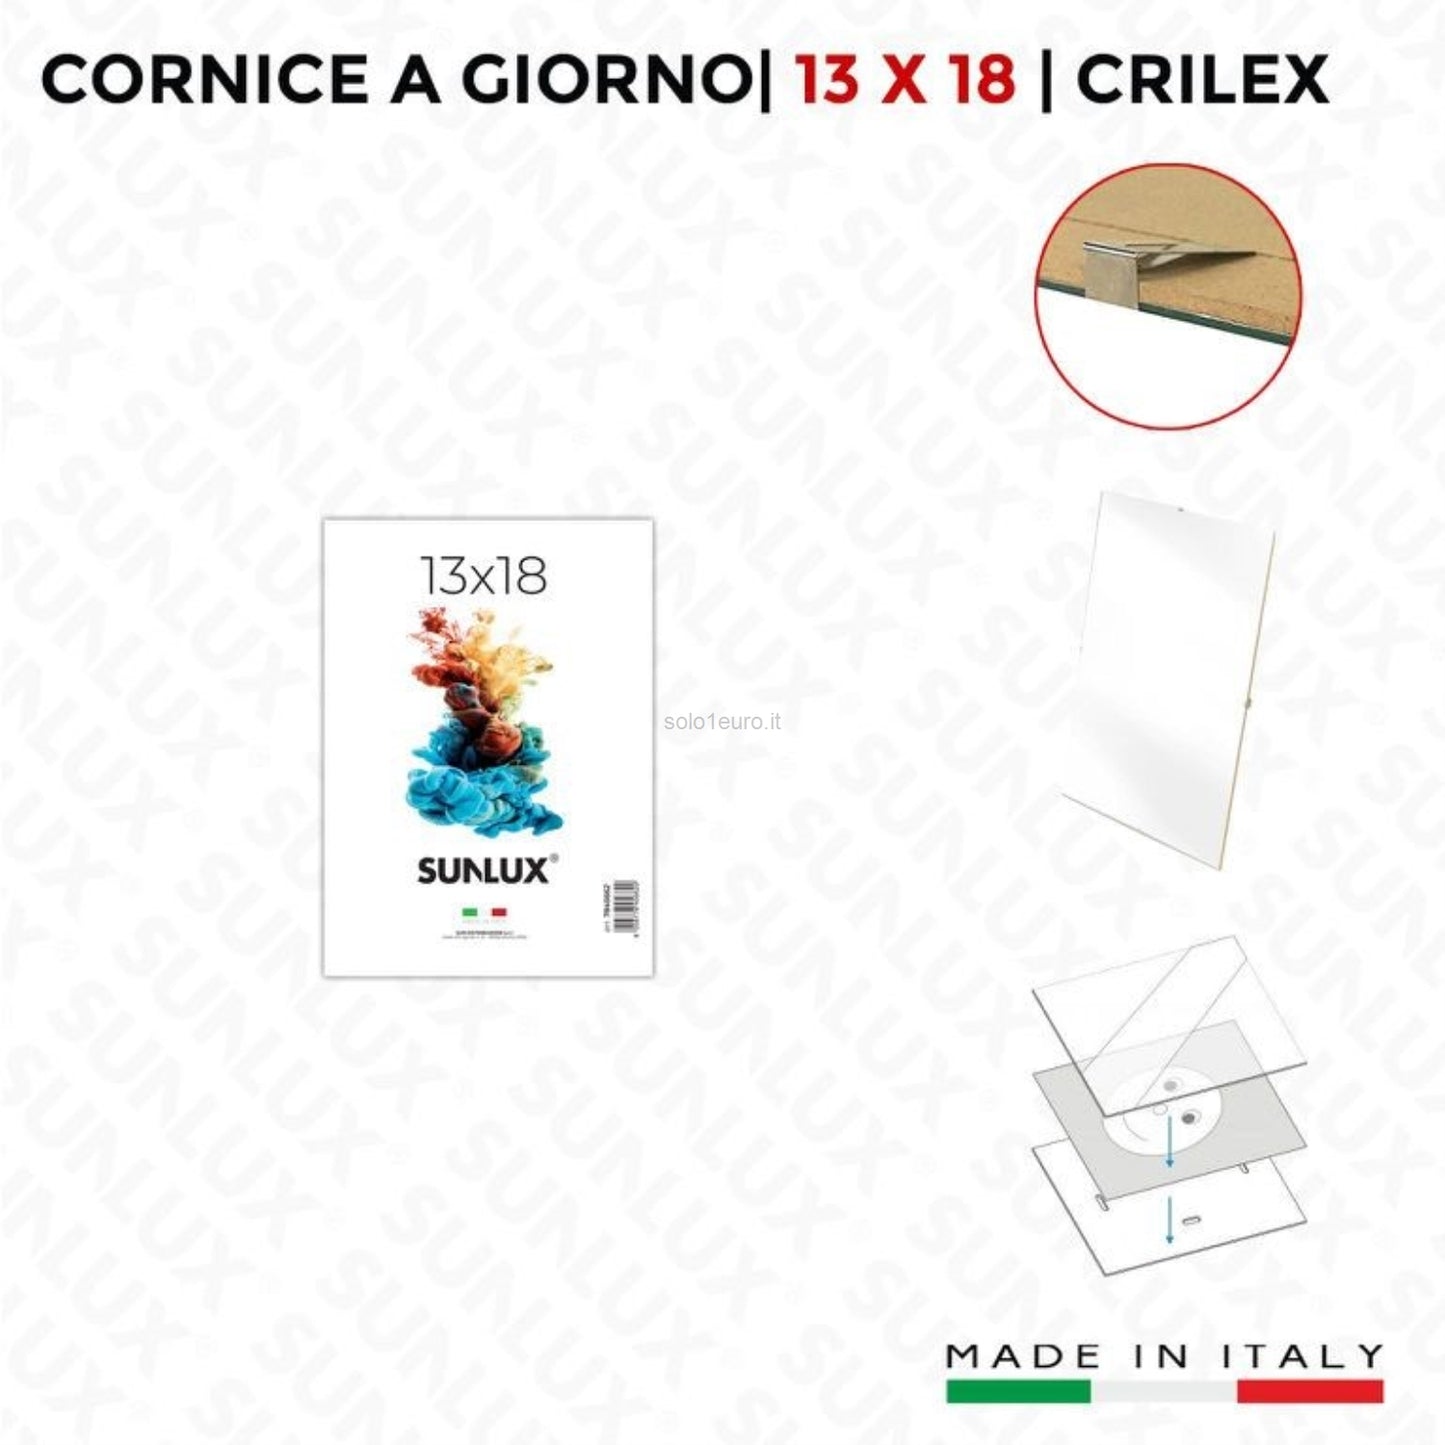 CORNICE A GIORNO CRILEX 13*18CM